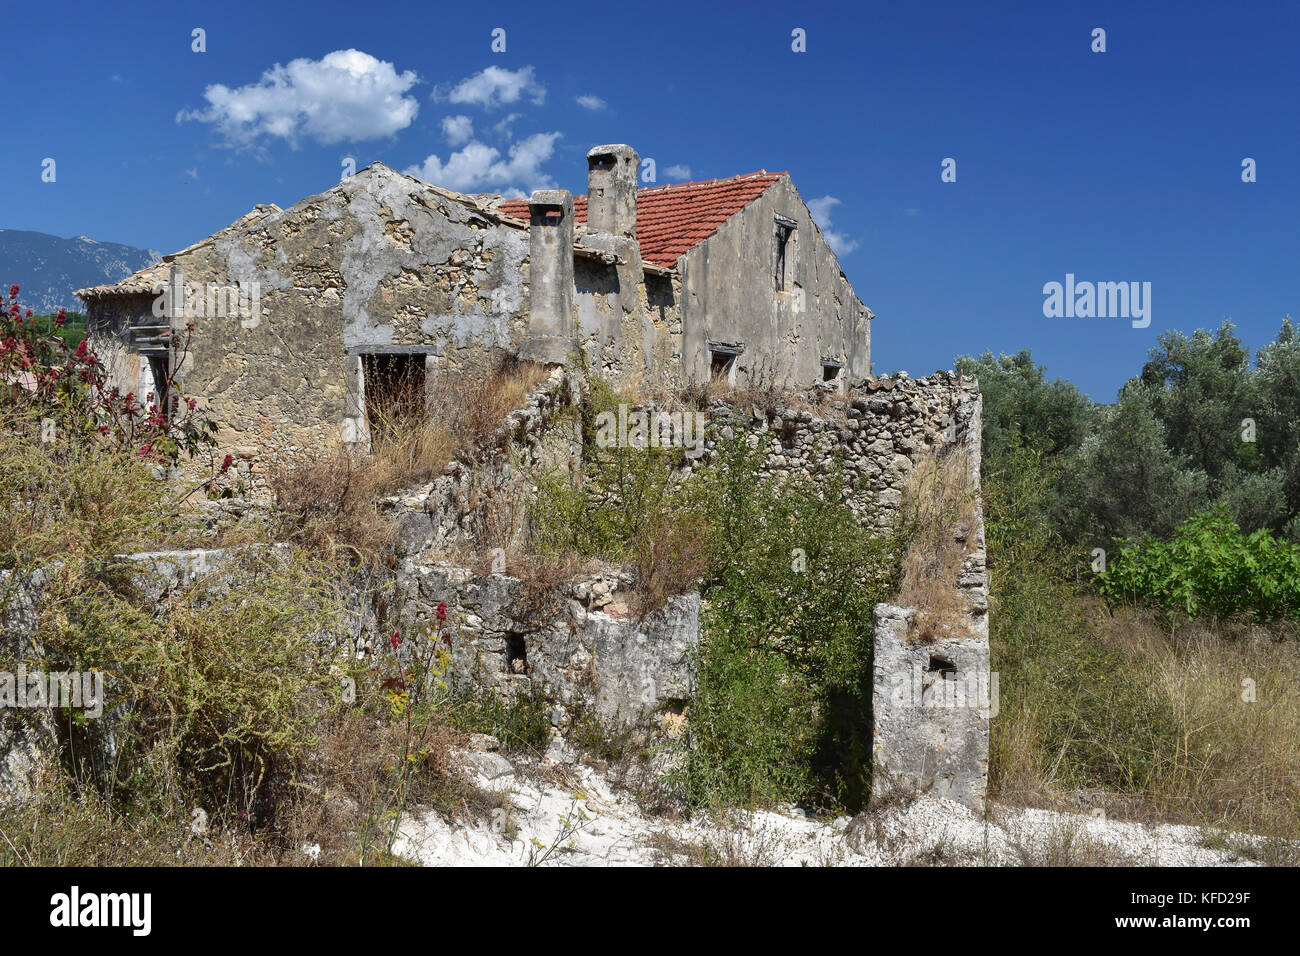 Un vieux bâtiment abandonné dans le village de Svoronata sur l'île grecque de Céphalonie (Céphalonie) Banque D'Images